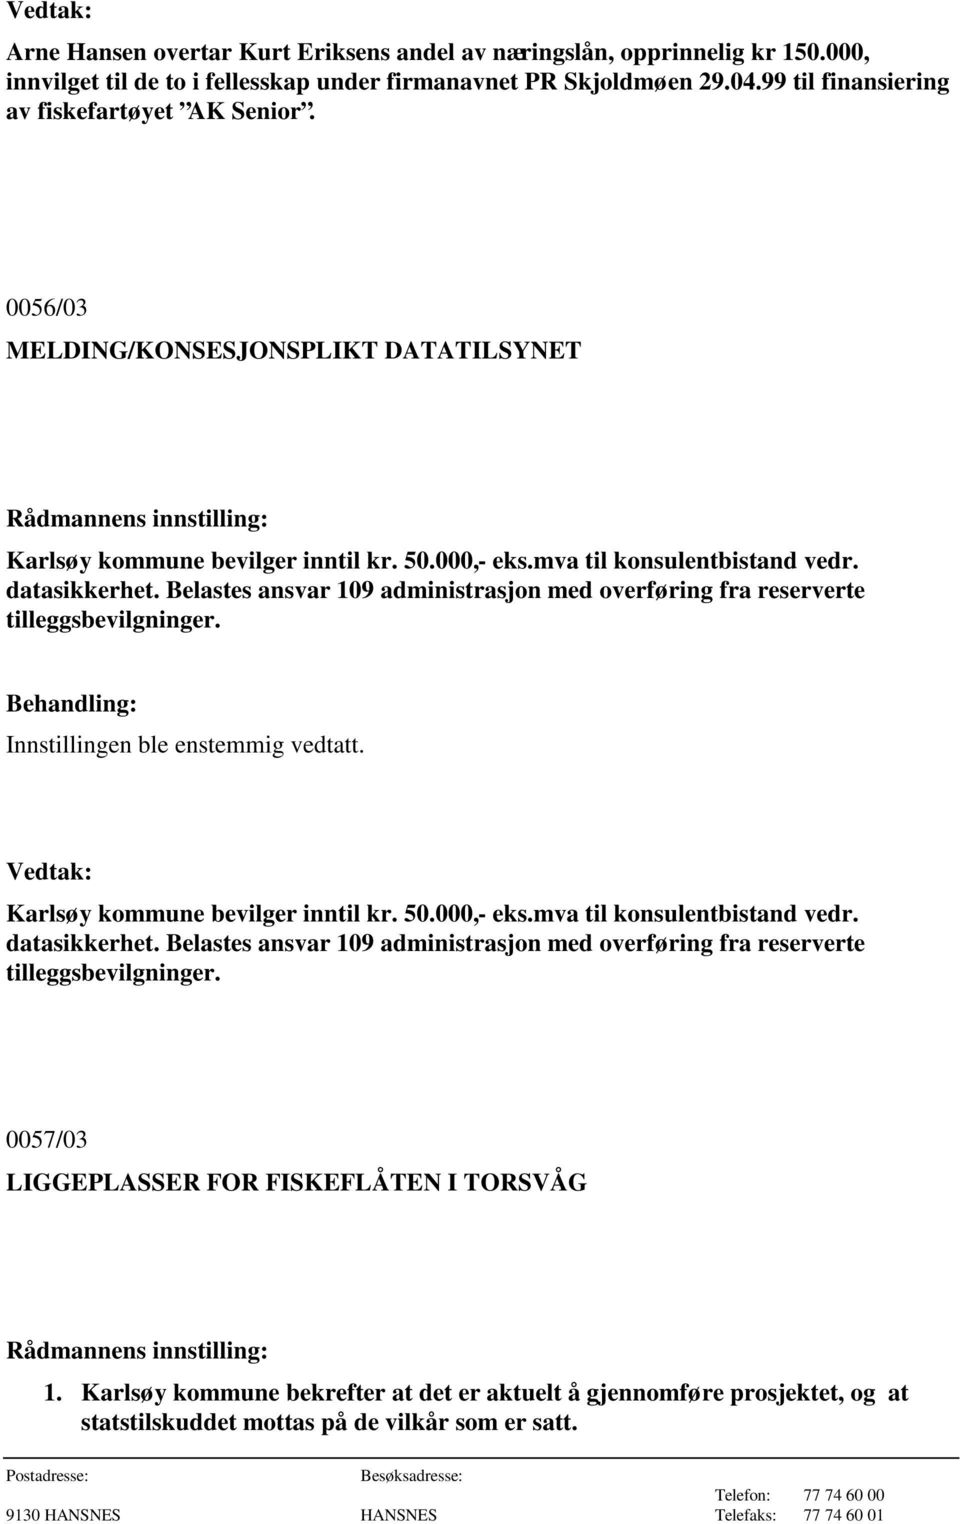 Belastes ansvar 109 administrasjon med overføring fra reserverte tilleggsbevilgninger. Karlsøy kommune bevilger inntil kr. 50.000,- eks.mva til konsulentbistand vedr. datasikkerhet.